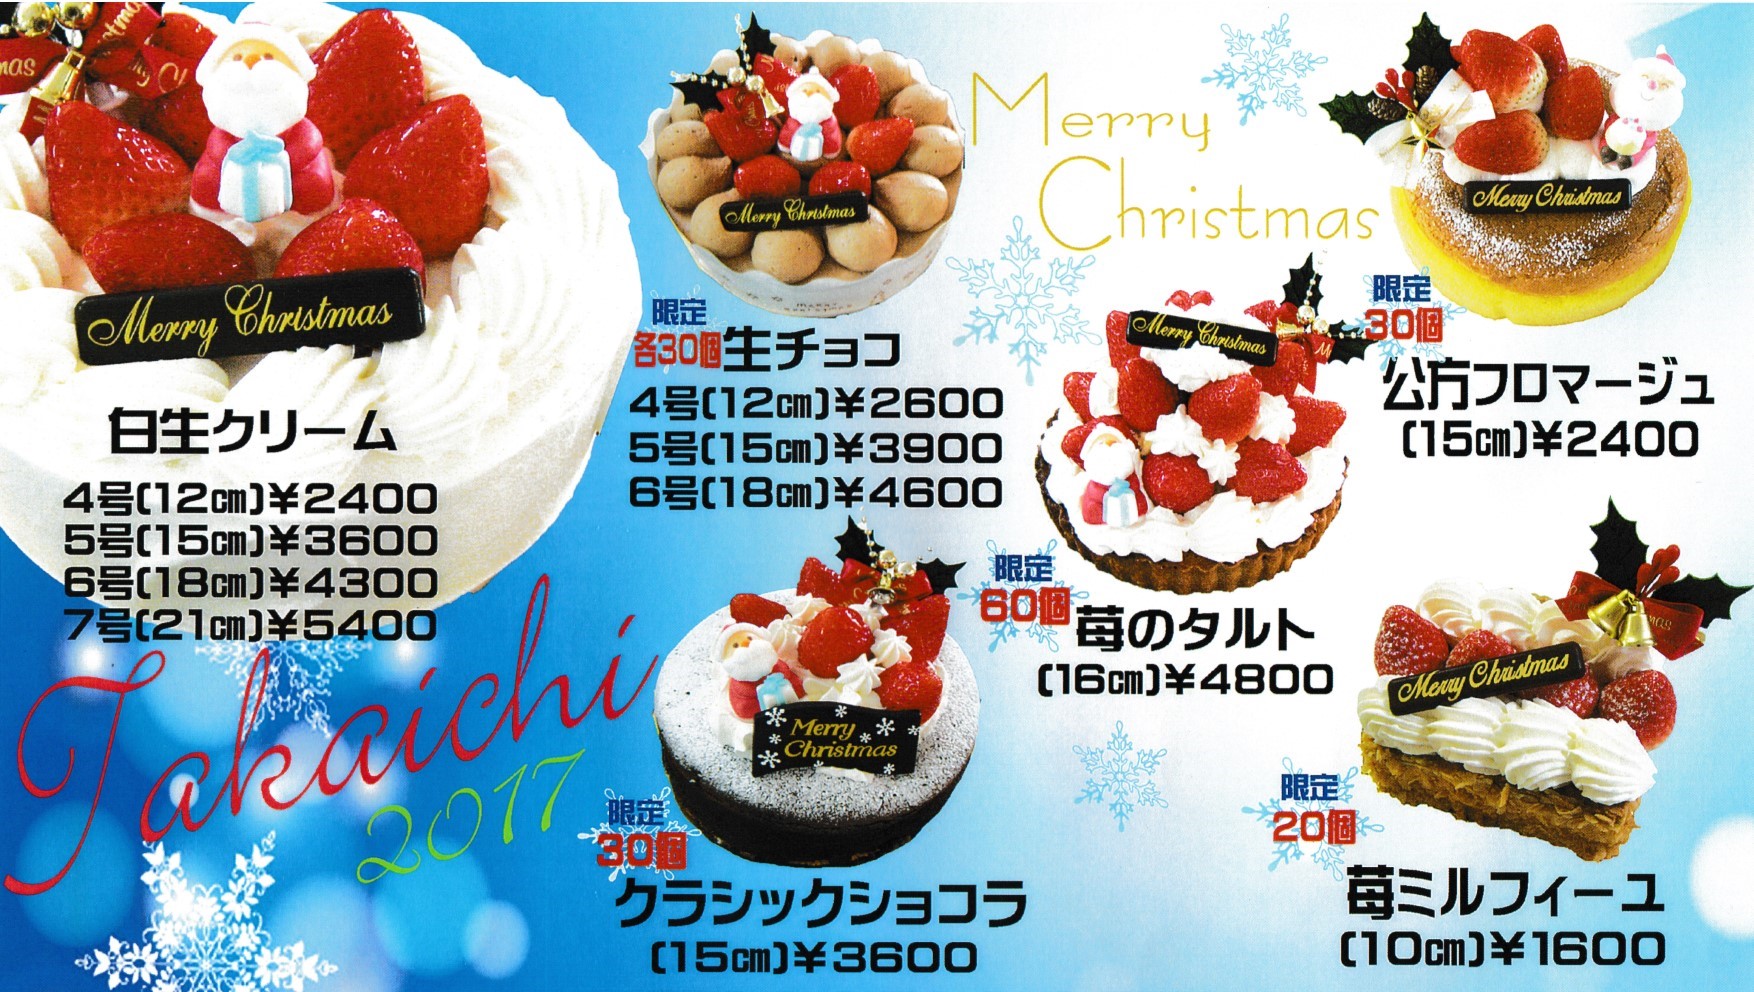 クリスマスケーキのお知らせ 菓志道タカイチ 高市